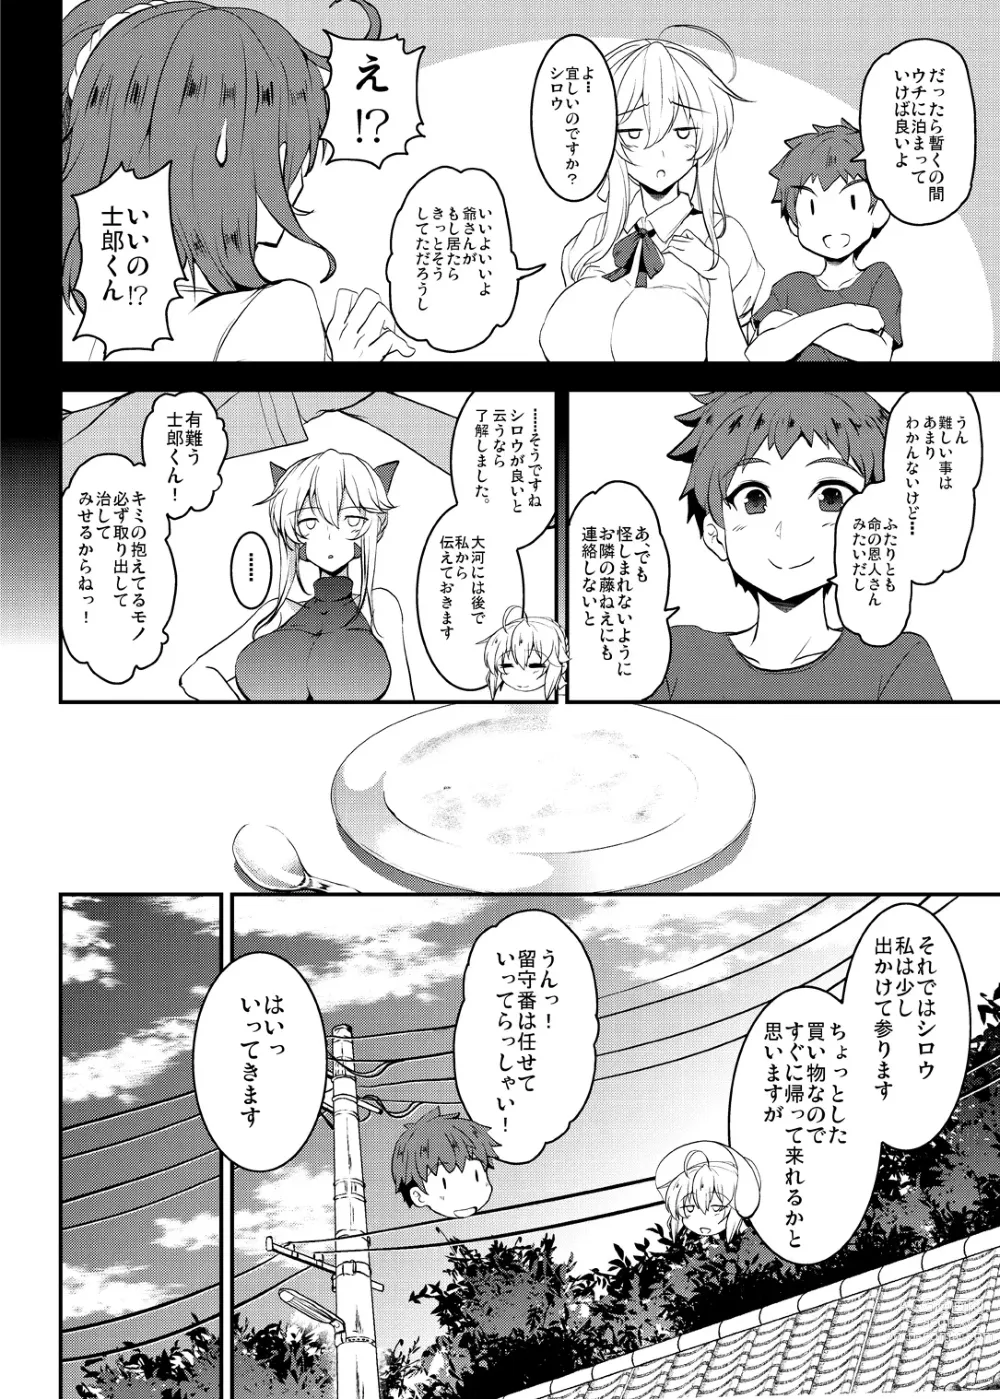 Page 28 of doujinshi Tonari no Chichiou-sama Memories Vol. 2